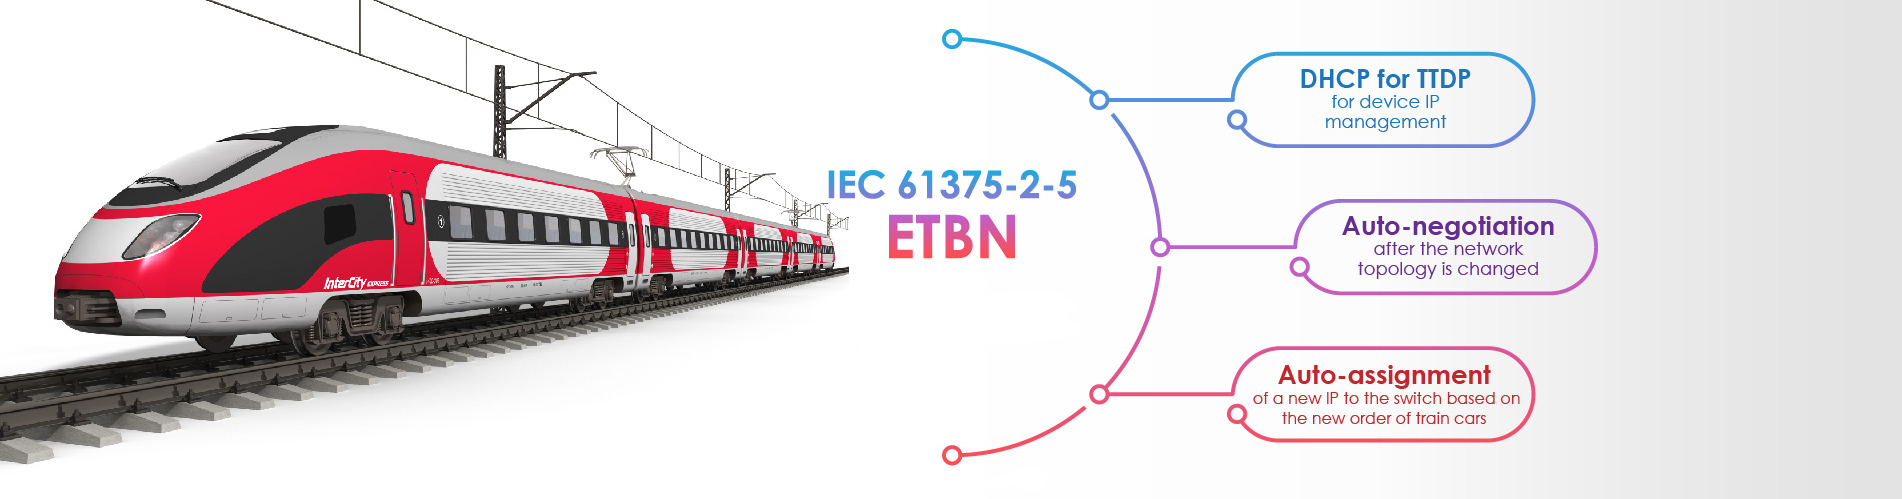 Norma IEC 61375-2-5 oraz DHCP dla TTDP firmy Lantech w zastosowaniach aplikacji taboru kolejowego